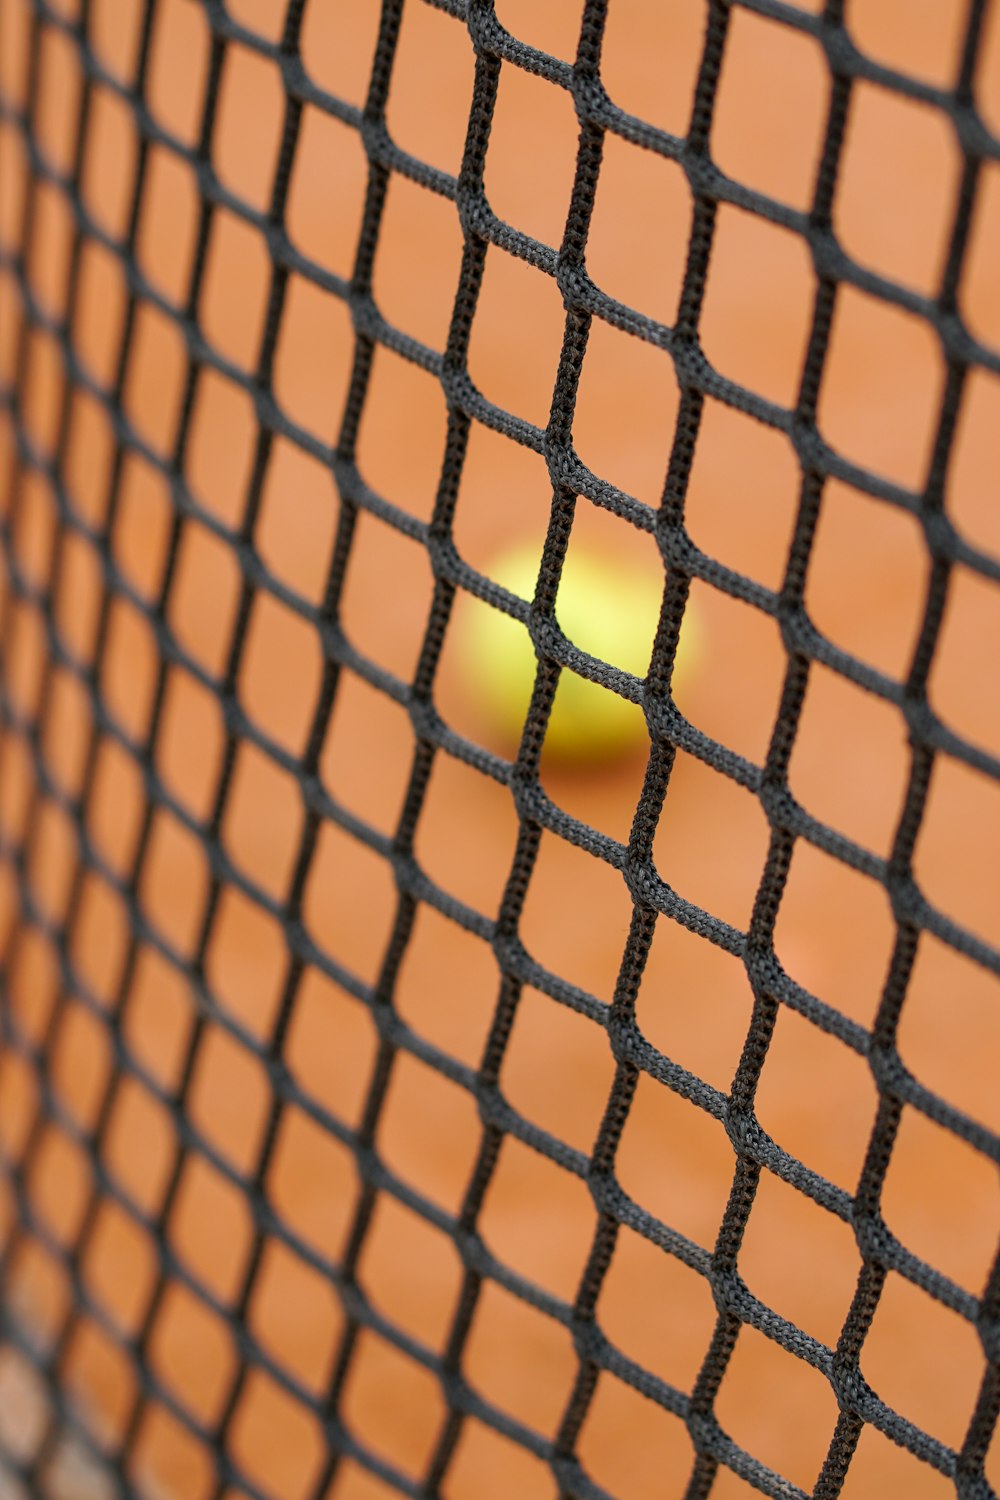 a tennis ball sitting on a tennis court net